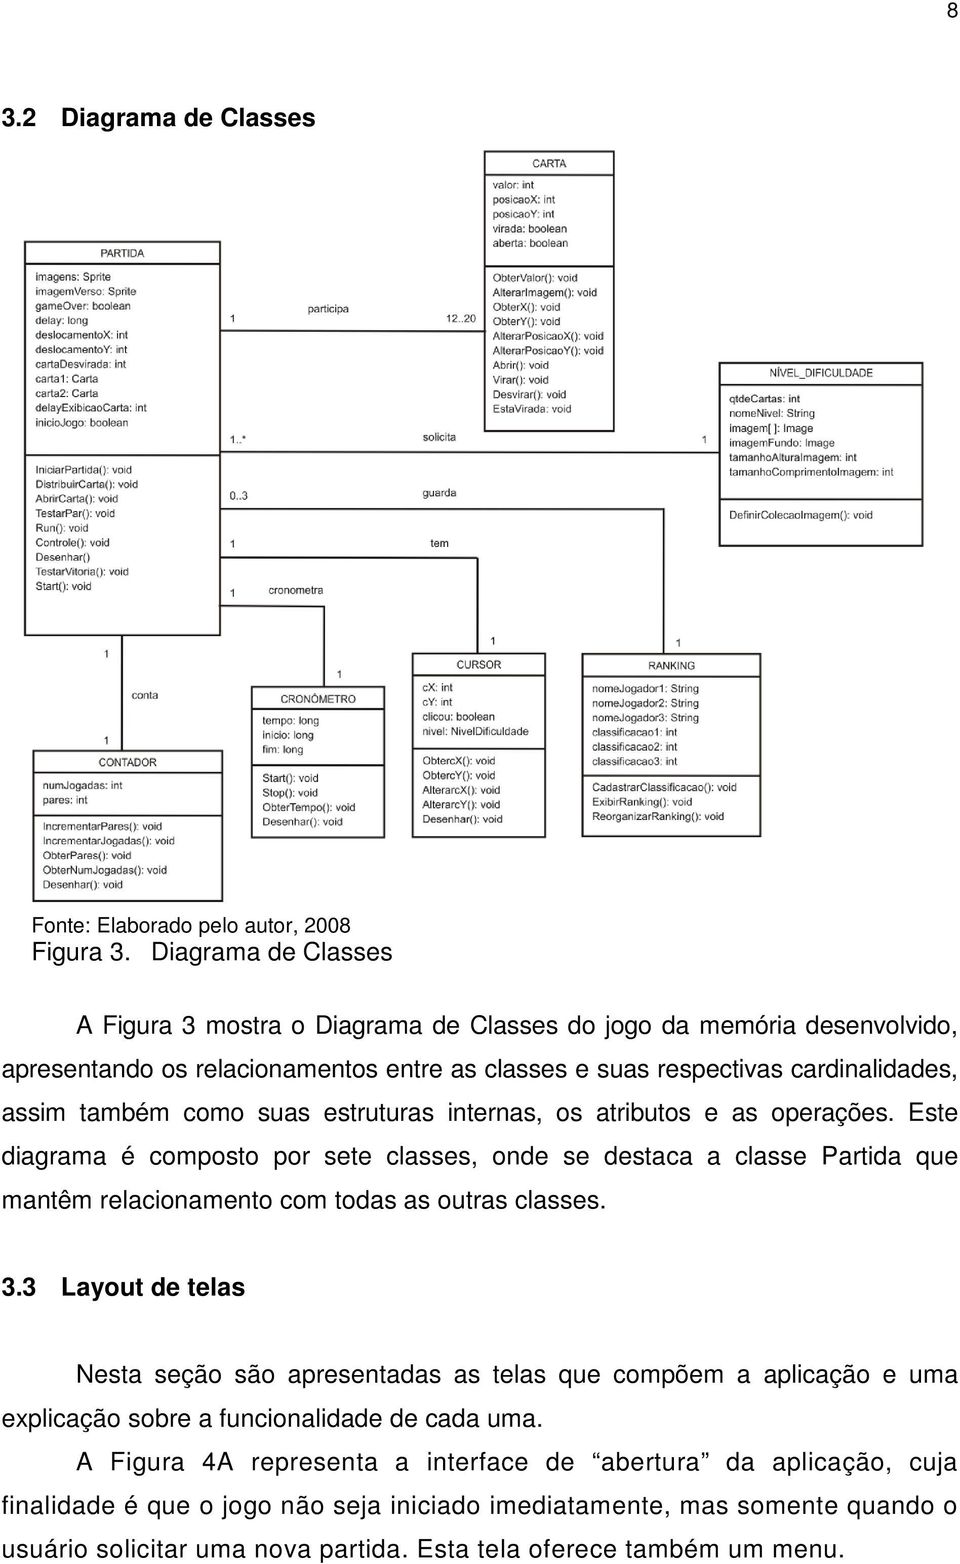 estruturas internas, os atributos e as operações. Este diagrama é composto por sete classes, onde se destaca a classe Partida que mantêm relacionamento com todas as outras classes. 3.